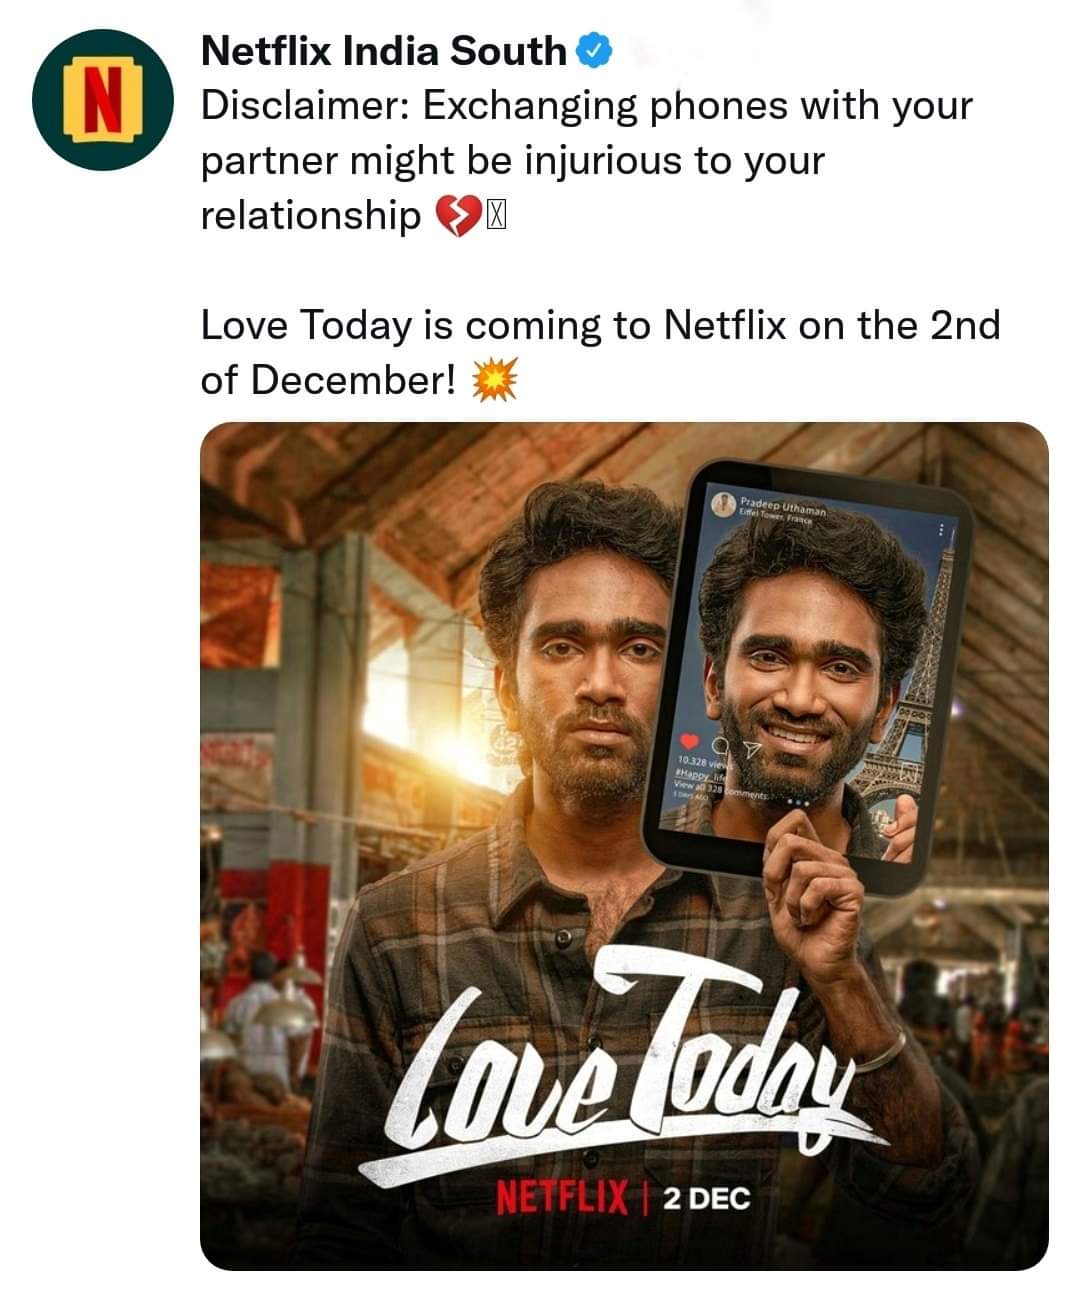 Pradeep Love Today Netflix OTT Release Date Announced